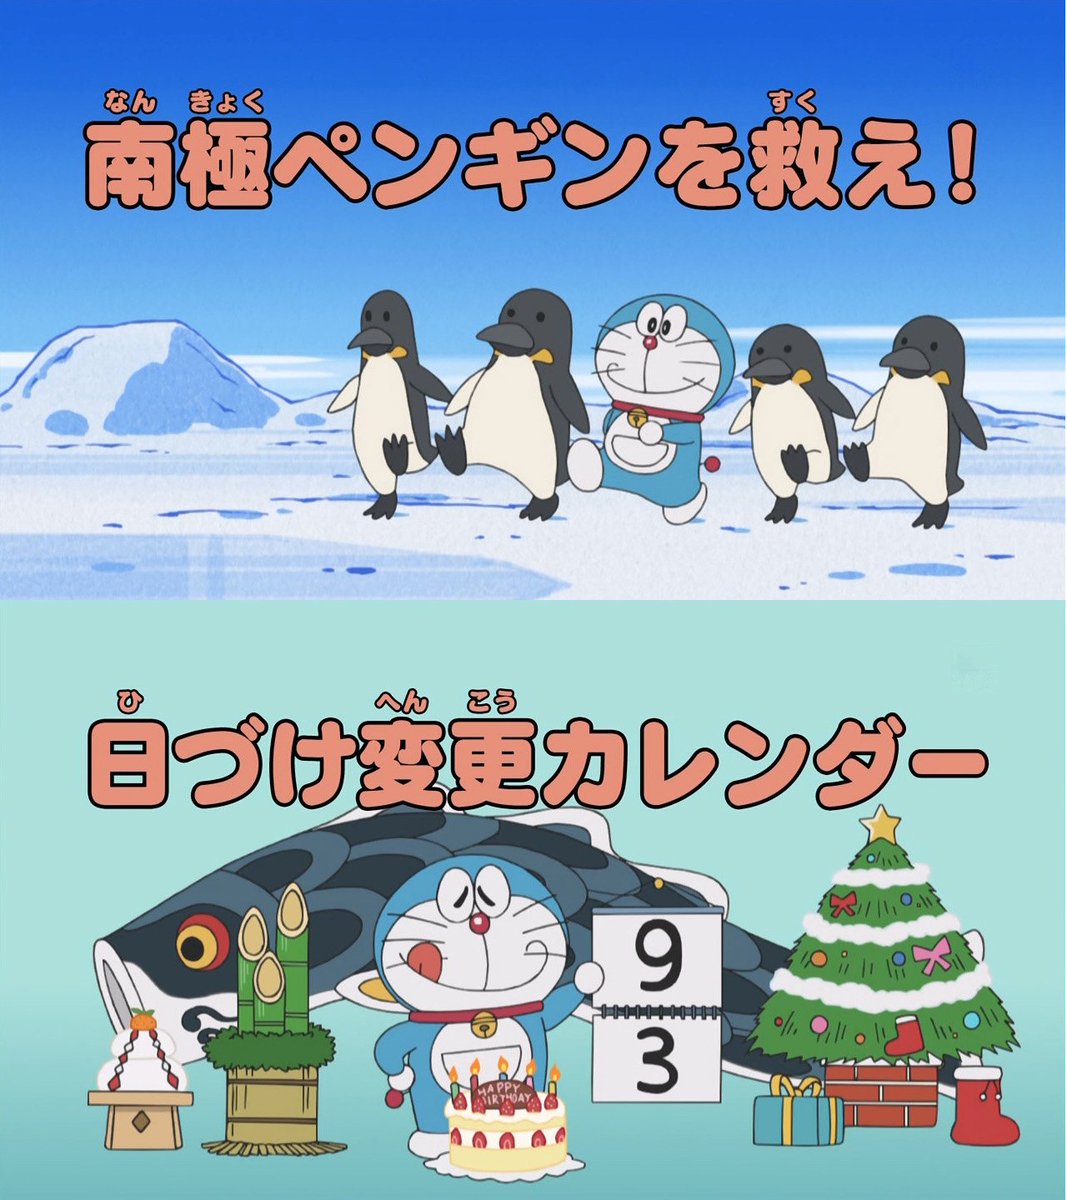 O Xrhsths 嘲笑のひよこ すすき Sto Twitter 今週の ドラえもん タイトル 第819話 南極ペンギンを救え 第0話 日づけ変更カレンダー Doraemon ドラえもん